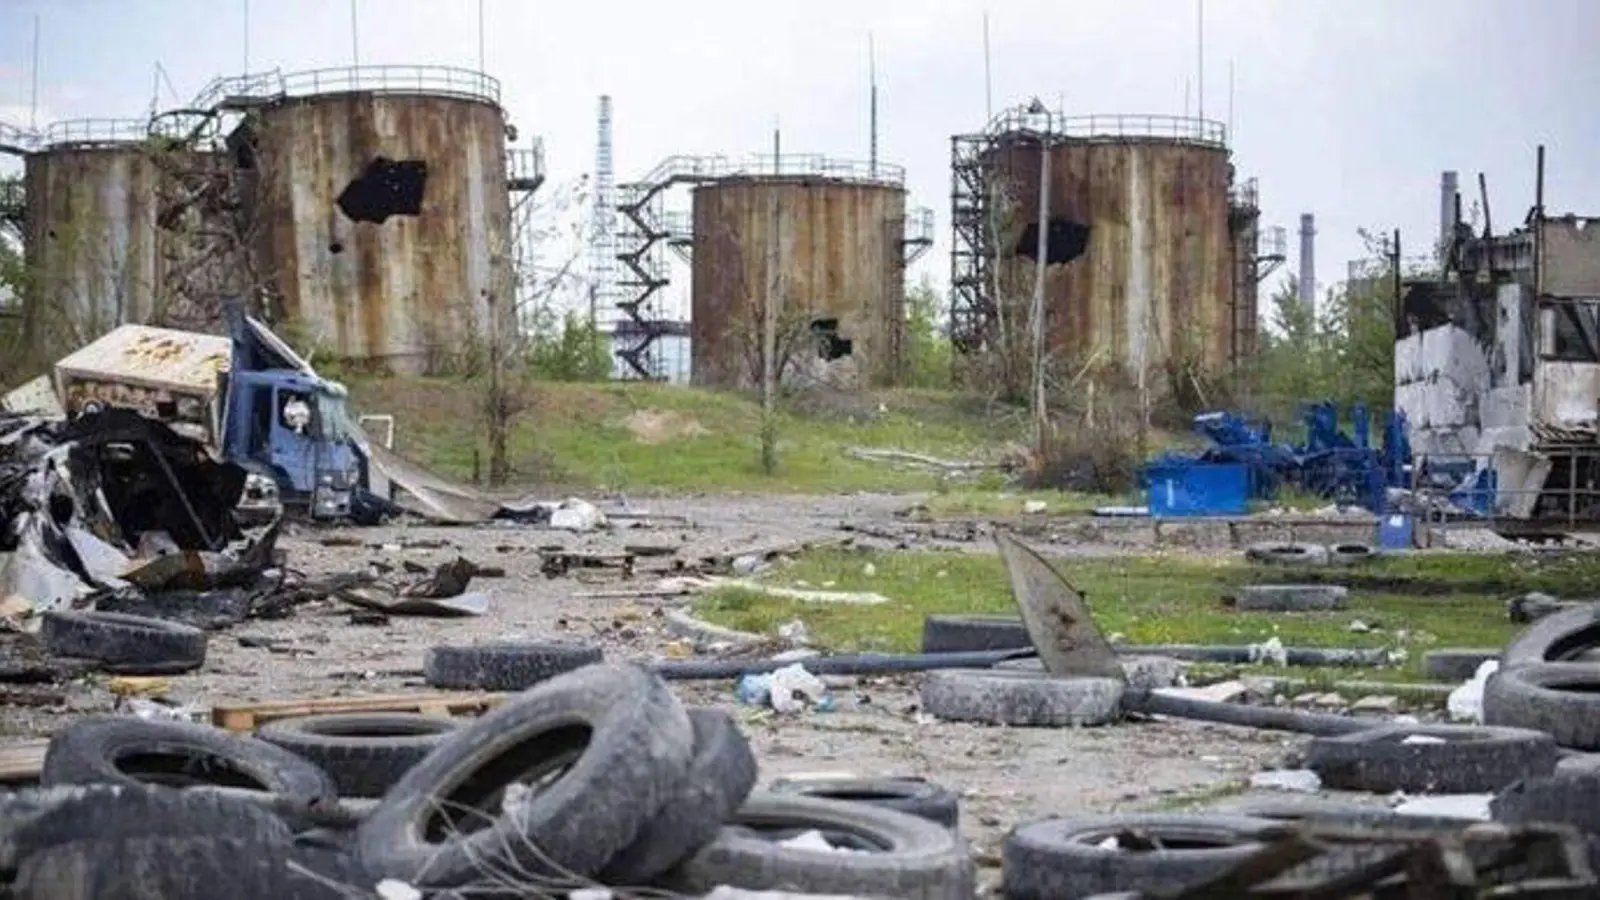 Eine zerstörte Chemiefabrik in Sjewjerodonezk. Beim Kampf um die Großstadt in der Ostukraine scheint es ein Hin und Her zwischen russischen und ukrainischen militärischen Erfolgen und Rückschlägen zu geben. (Foto: Unbekannt/GROUPDF/APA/dpa)